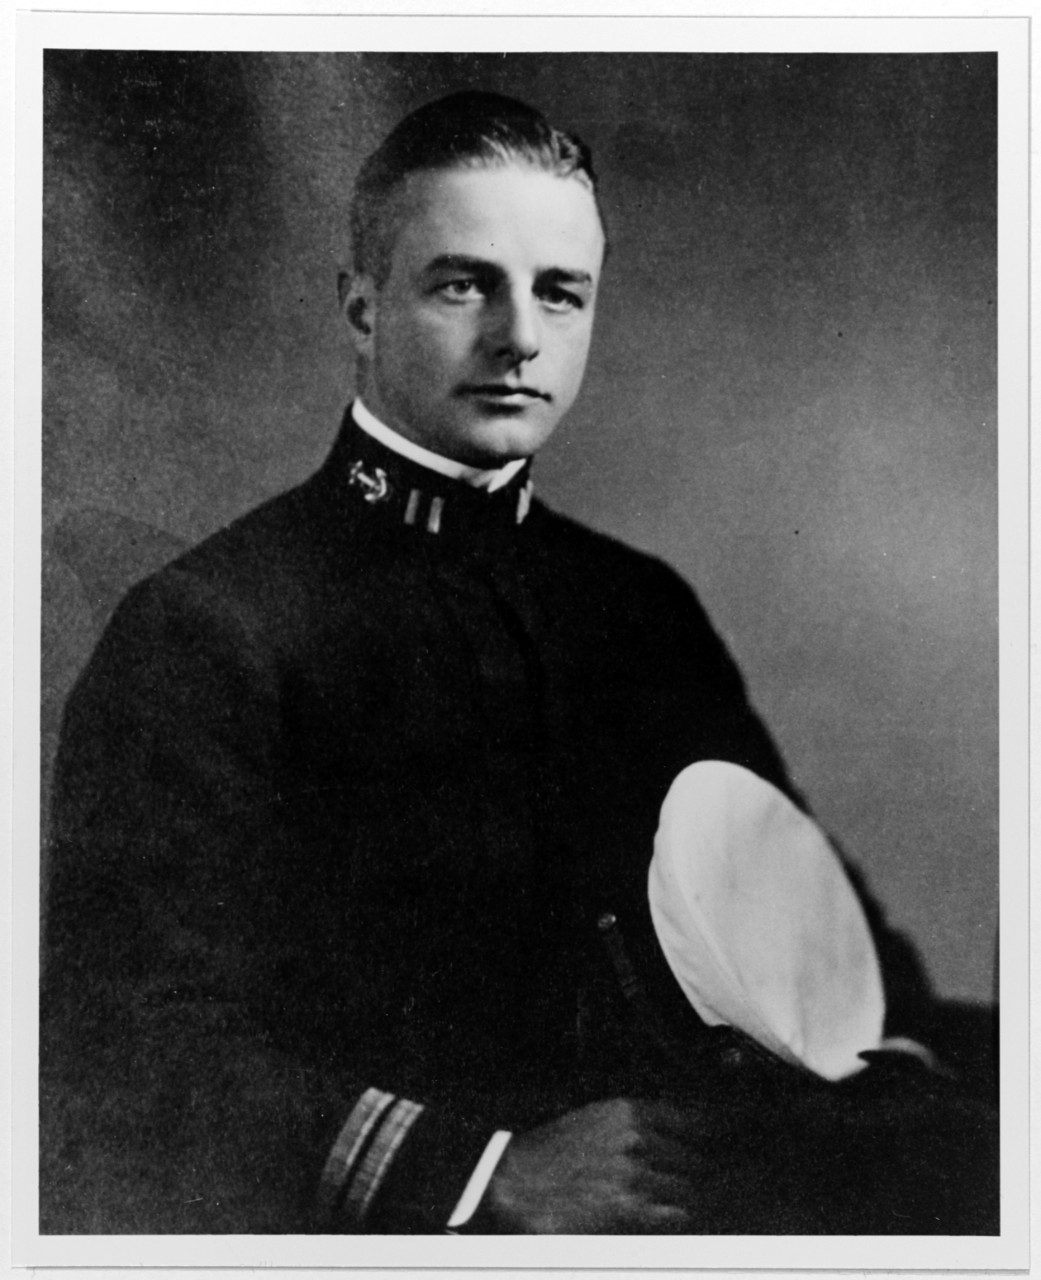 Sydney P. Clark, Lieutenant, USN